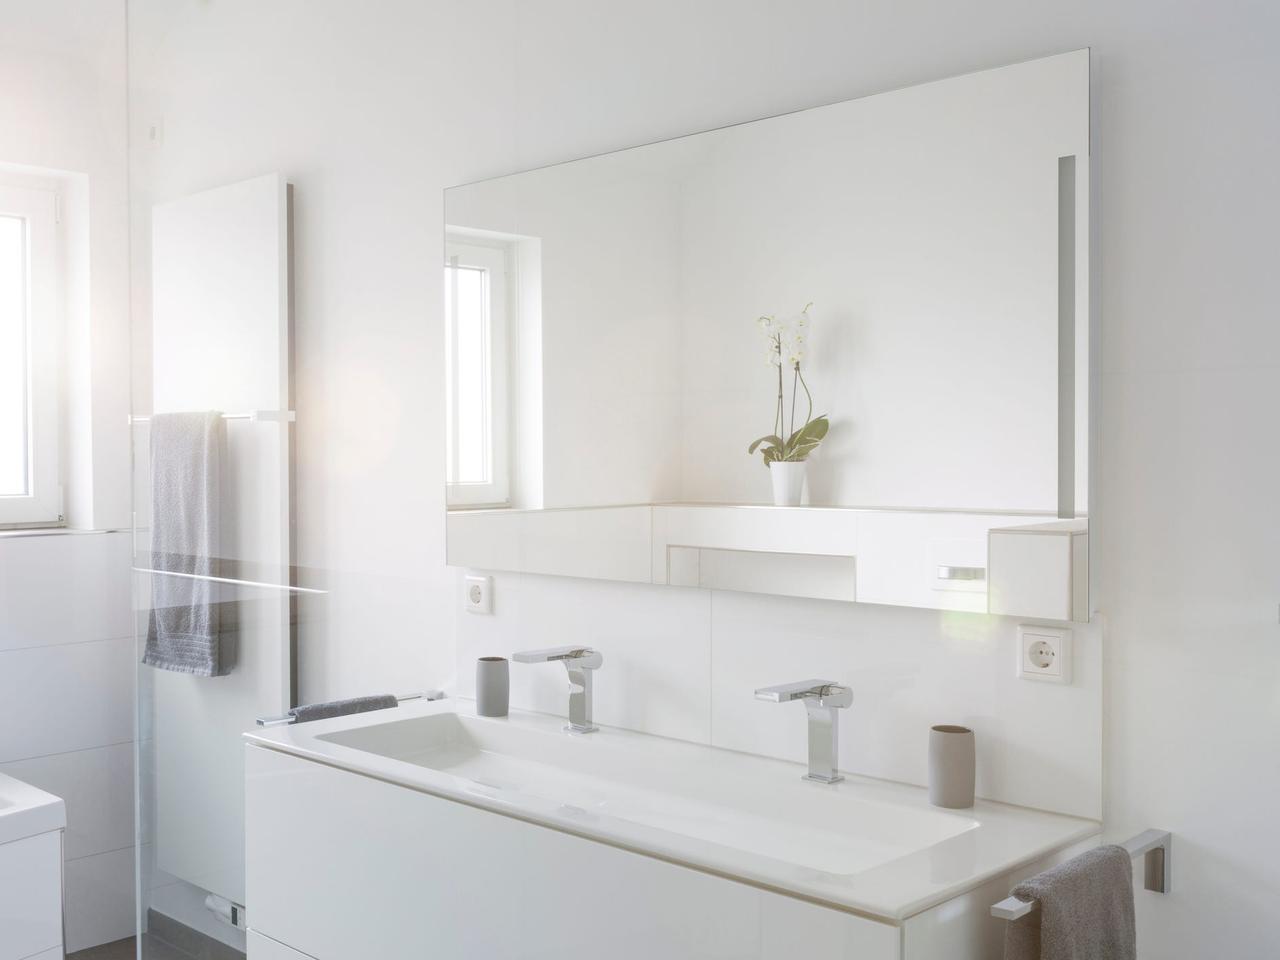 バスルームは白よりも明るい色の人気が上昇している。